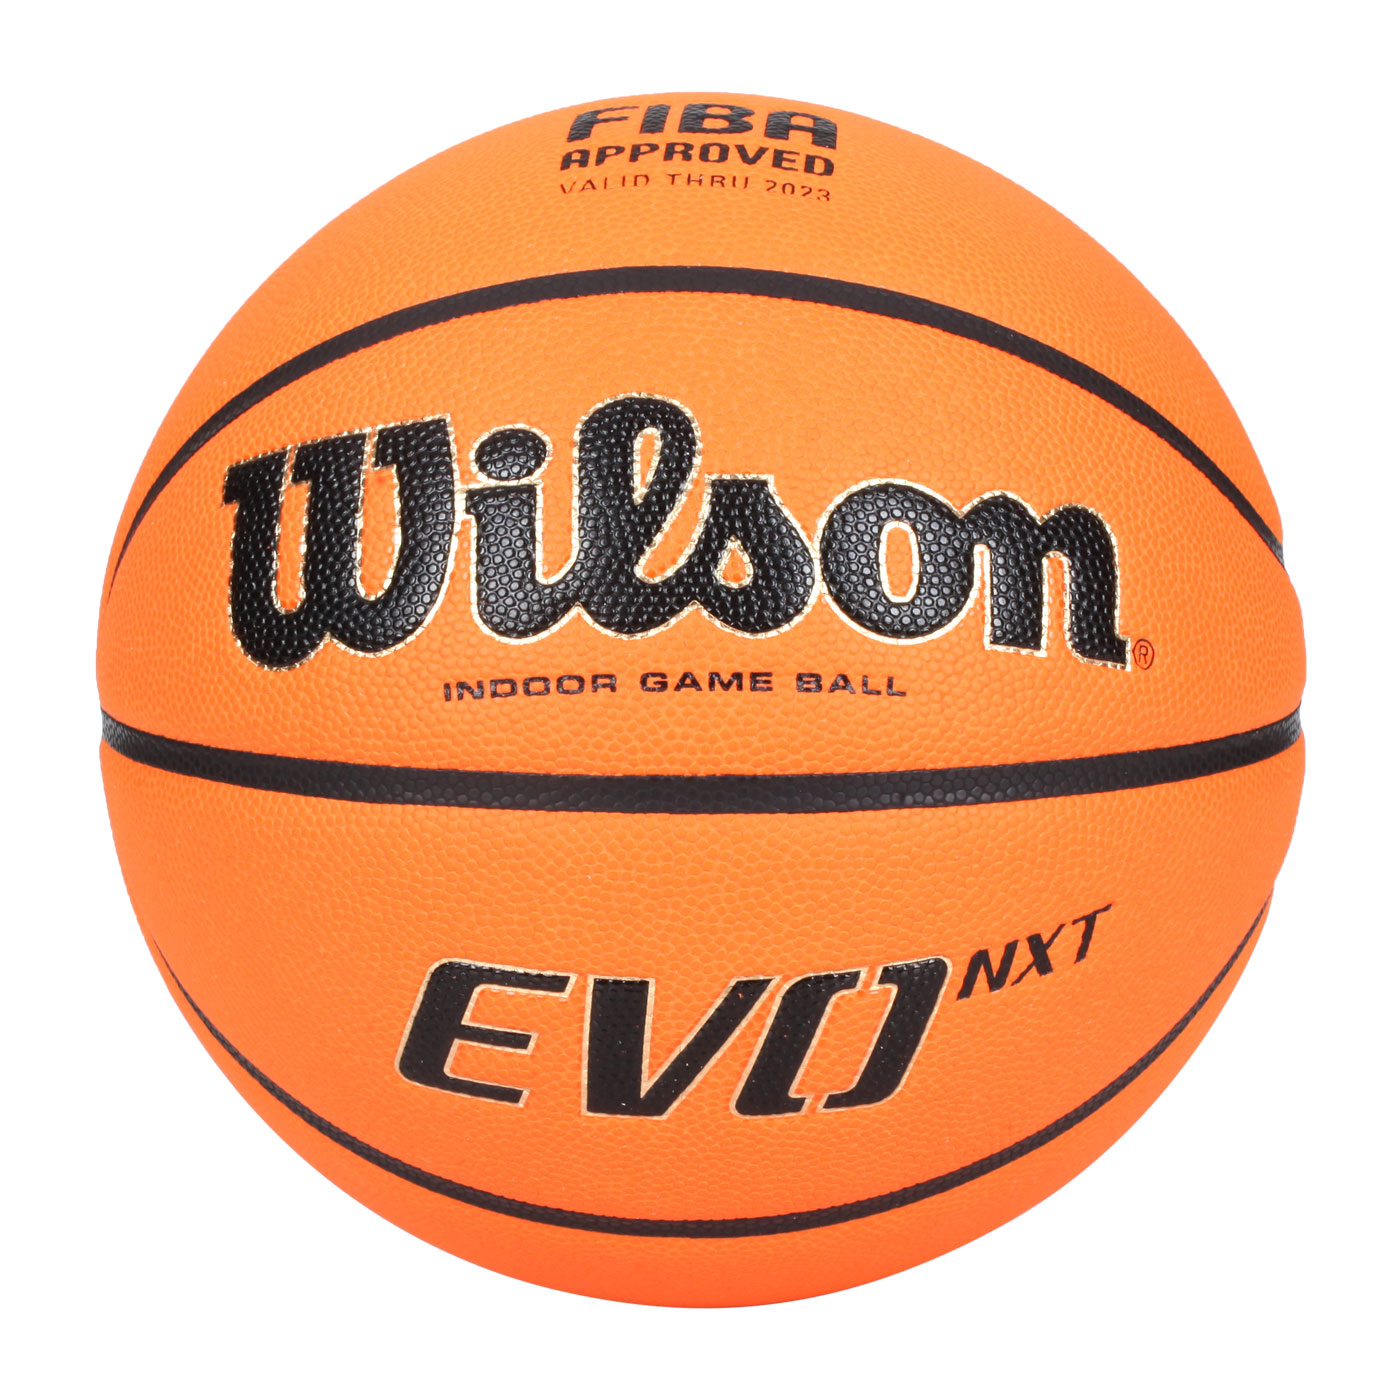 WILSON FIBA EVO NXT 合成皮籃球#7 WTB0965XB - 橘黑金